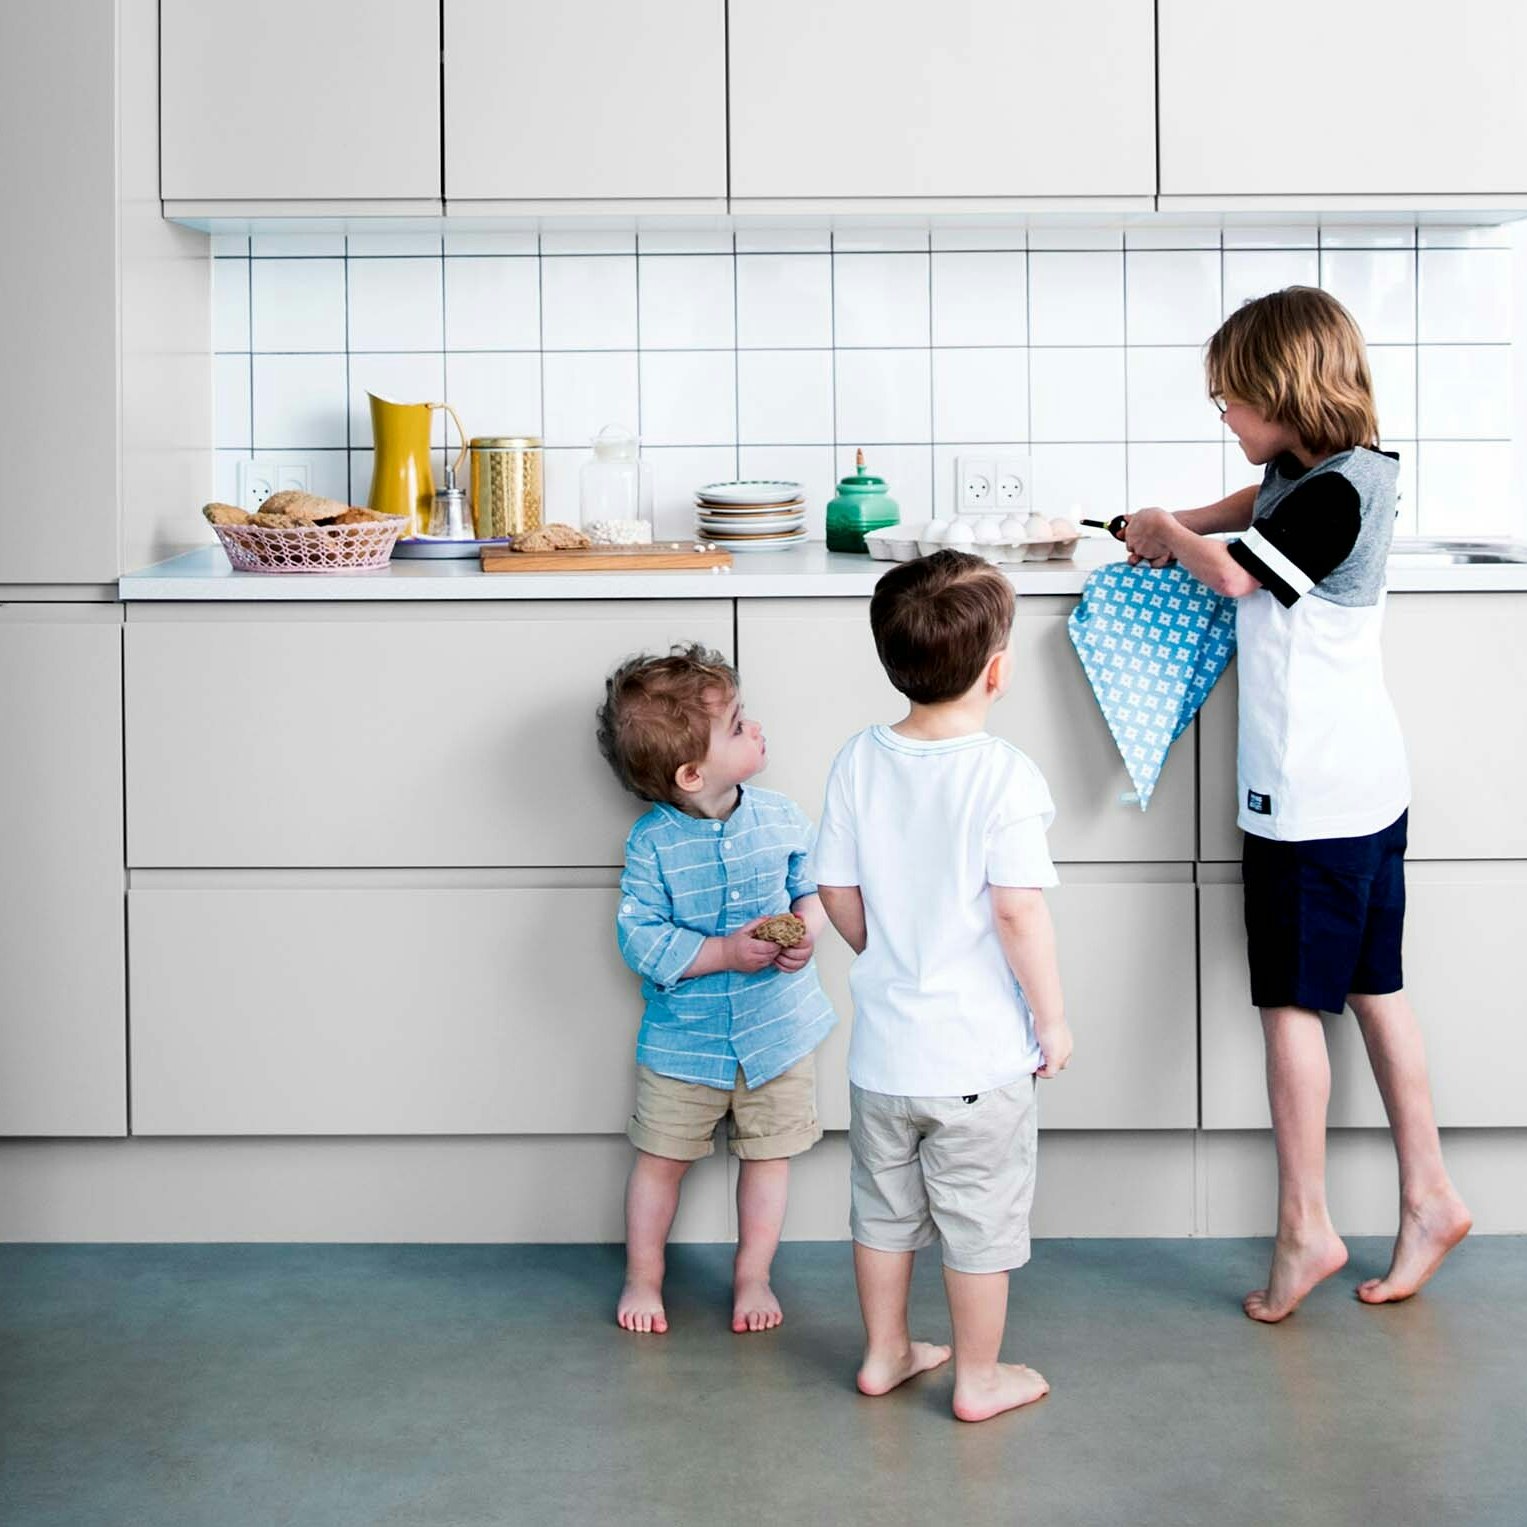 5 råd til at få en god oplevelse med børnene i køkkenet